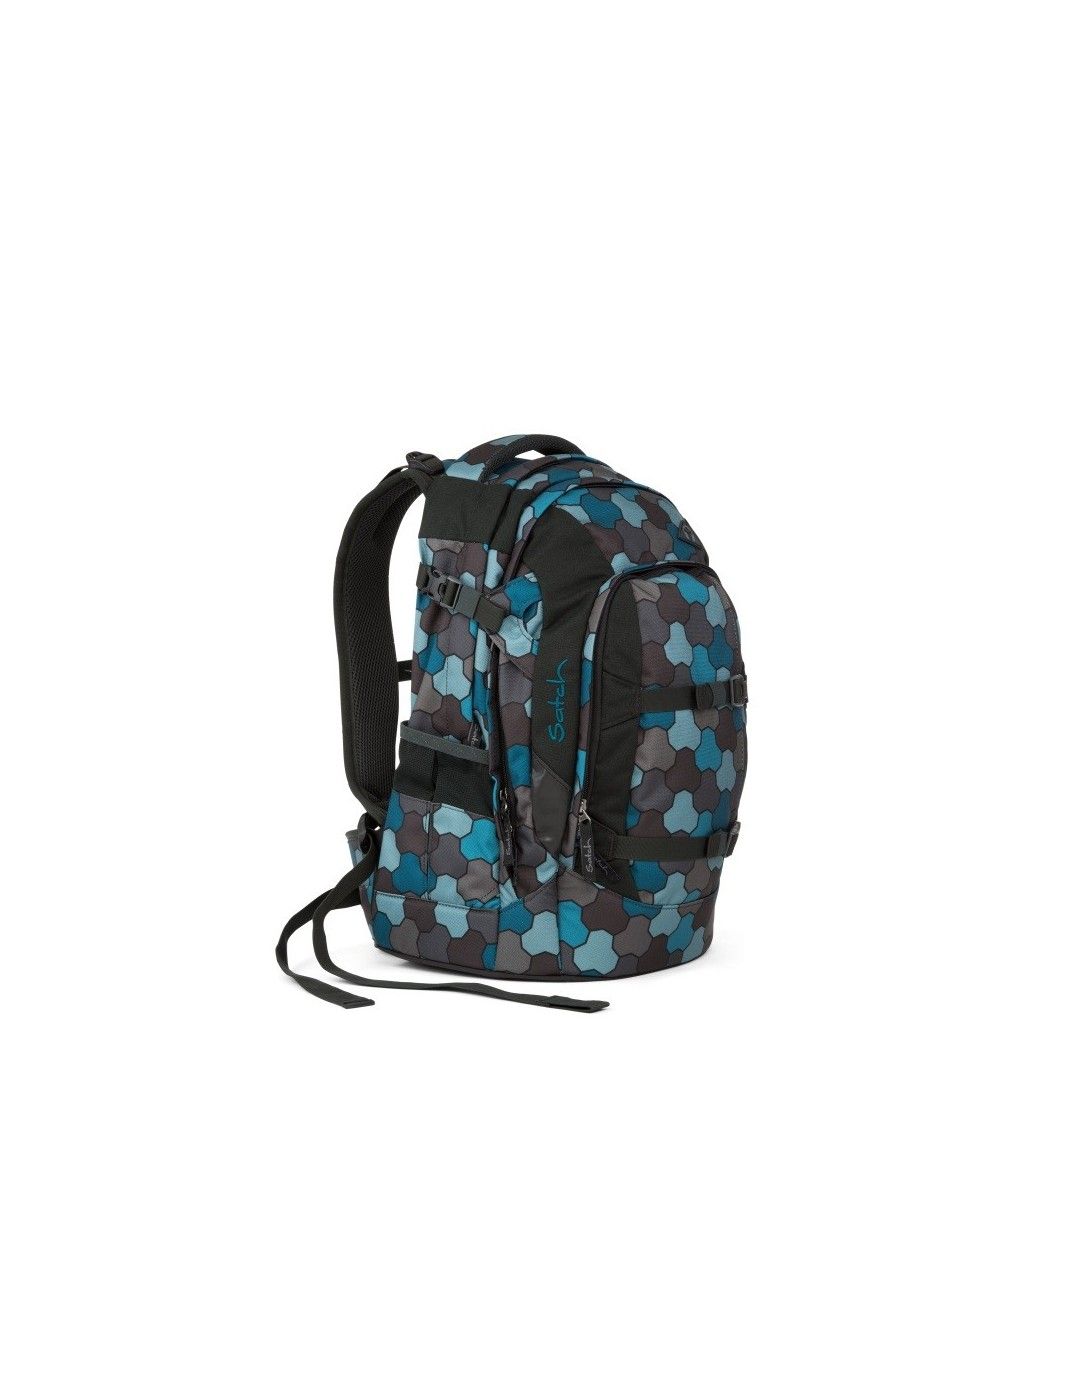 Satch school backpack Pack Ocean Flow